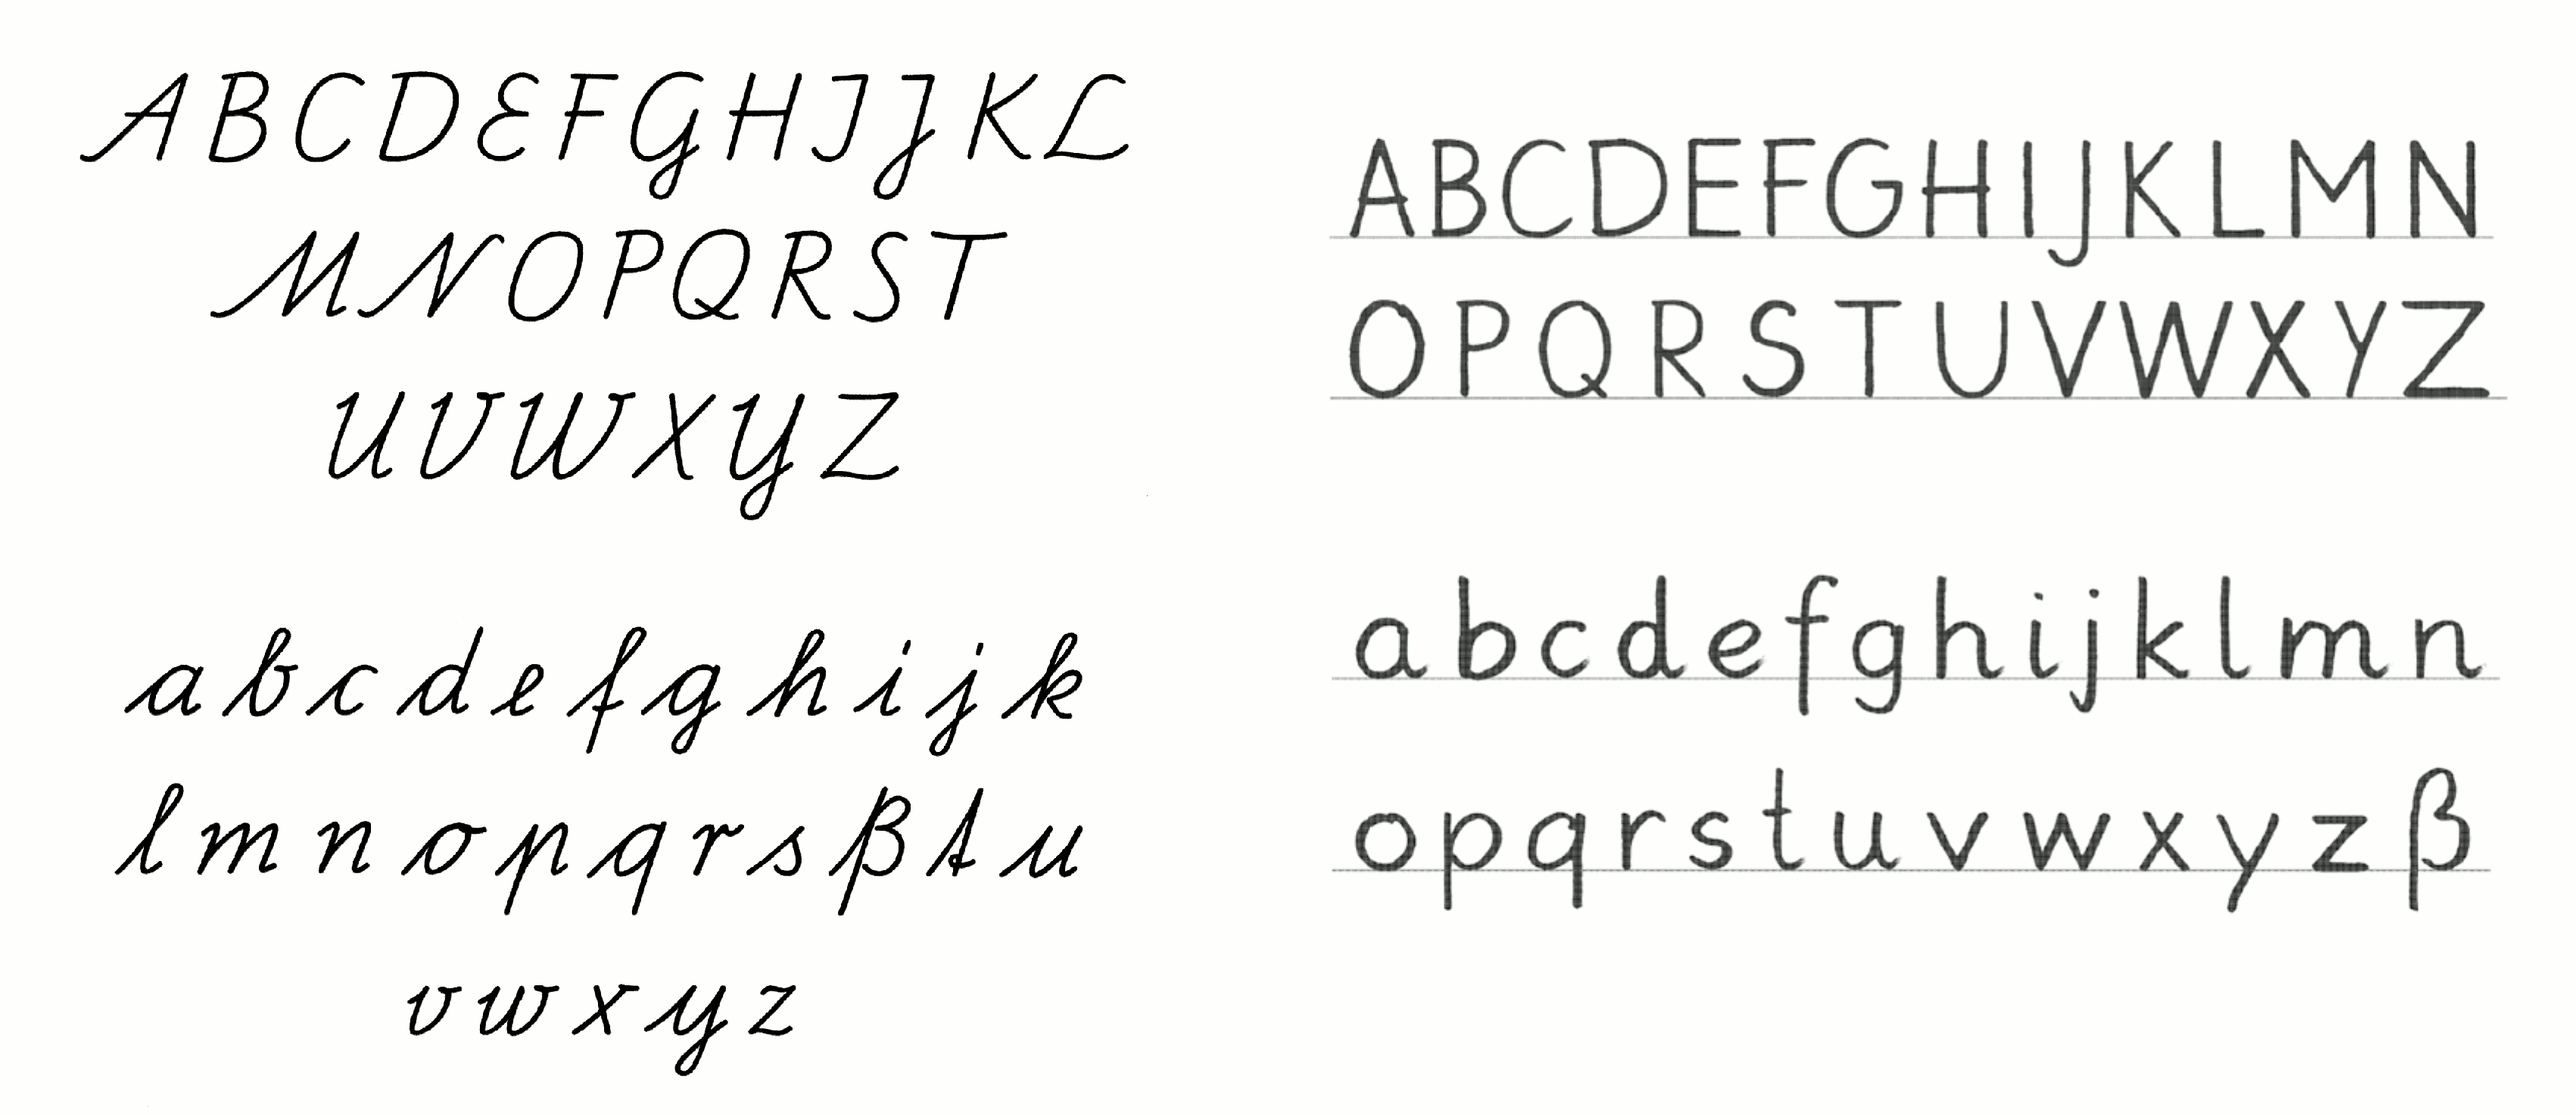 Alphabet mit Groß- und Kleinbuchstaben, links in geschwungenen Linien, rechts nahe an gedruckten Buchstaben.